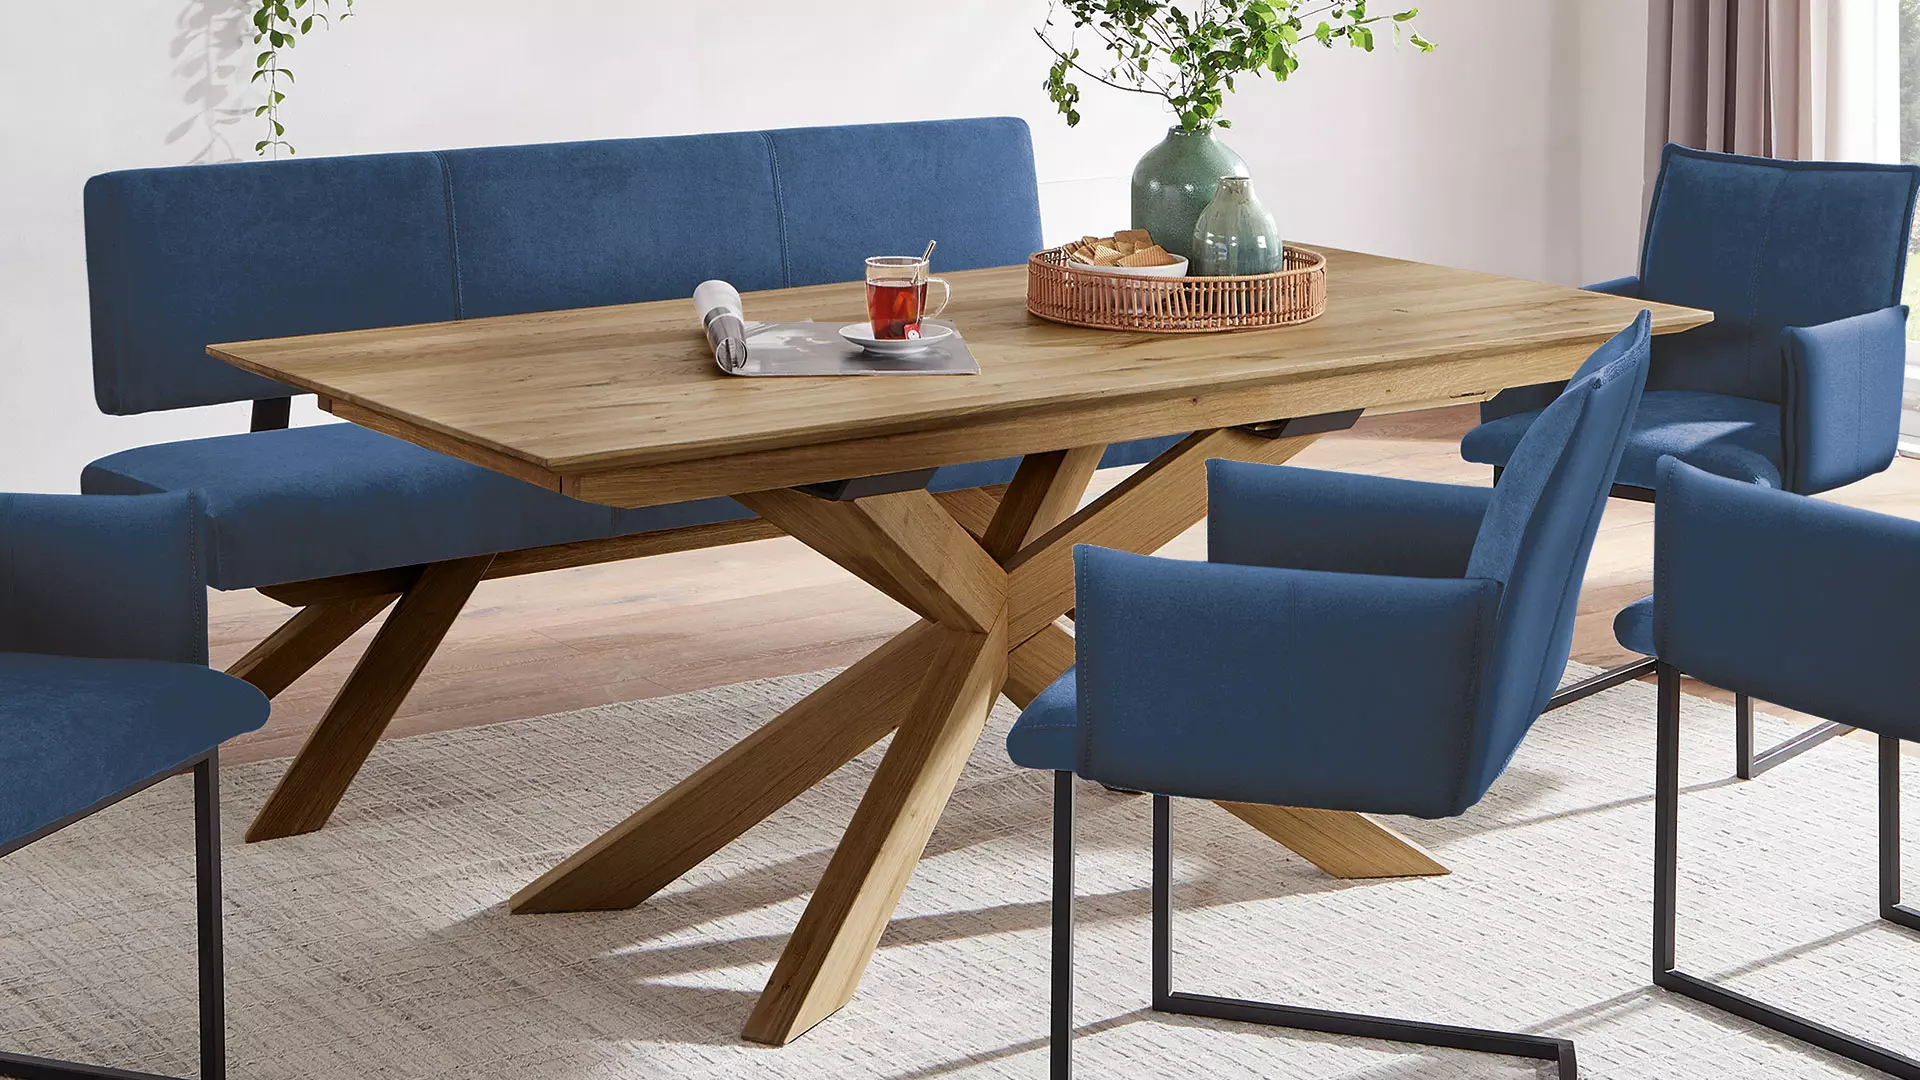 Table Aurana-Estenda au design exceptionnel avec beaucoup d'espace pour les jambes